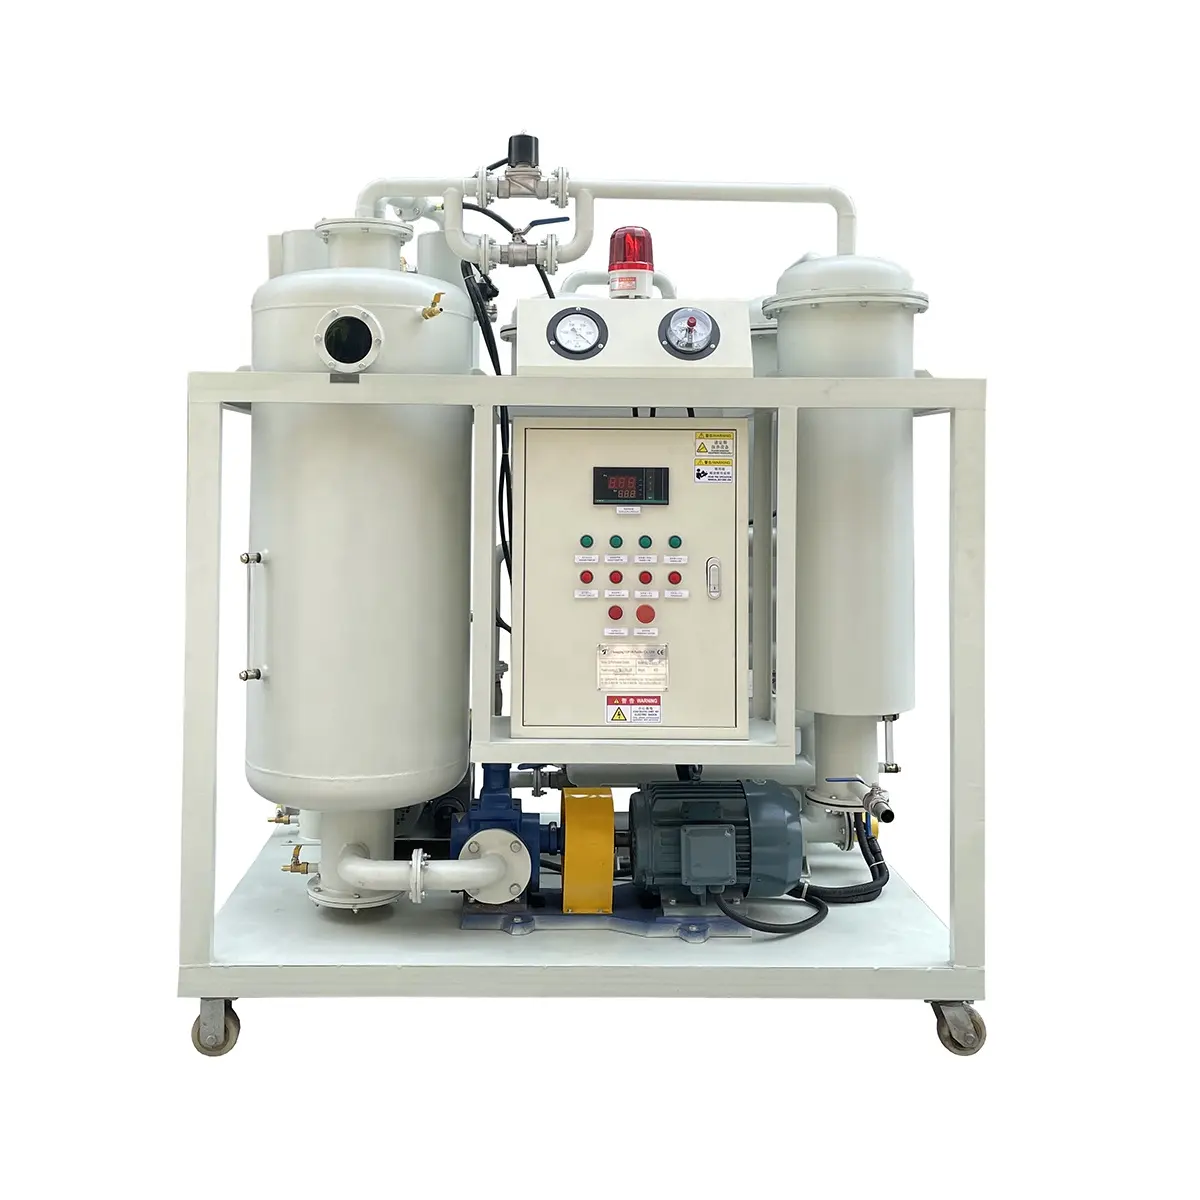 Sistema de filtración y desgasificación de aceite de turbina de aceite hidráulico usado al vacío para eliminación de humedad y partículas